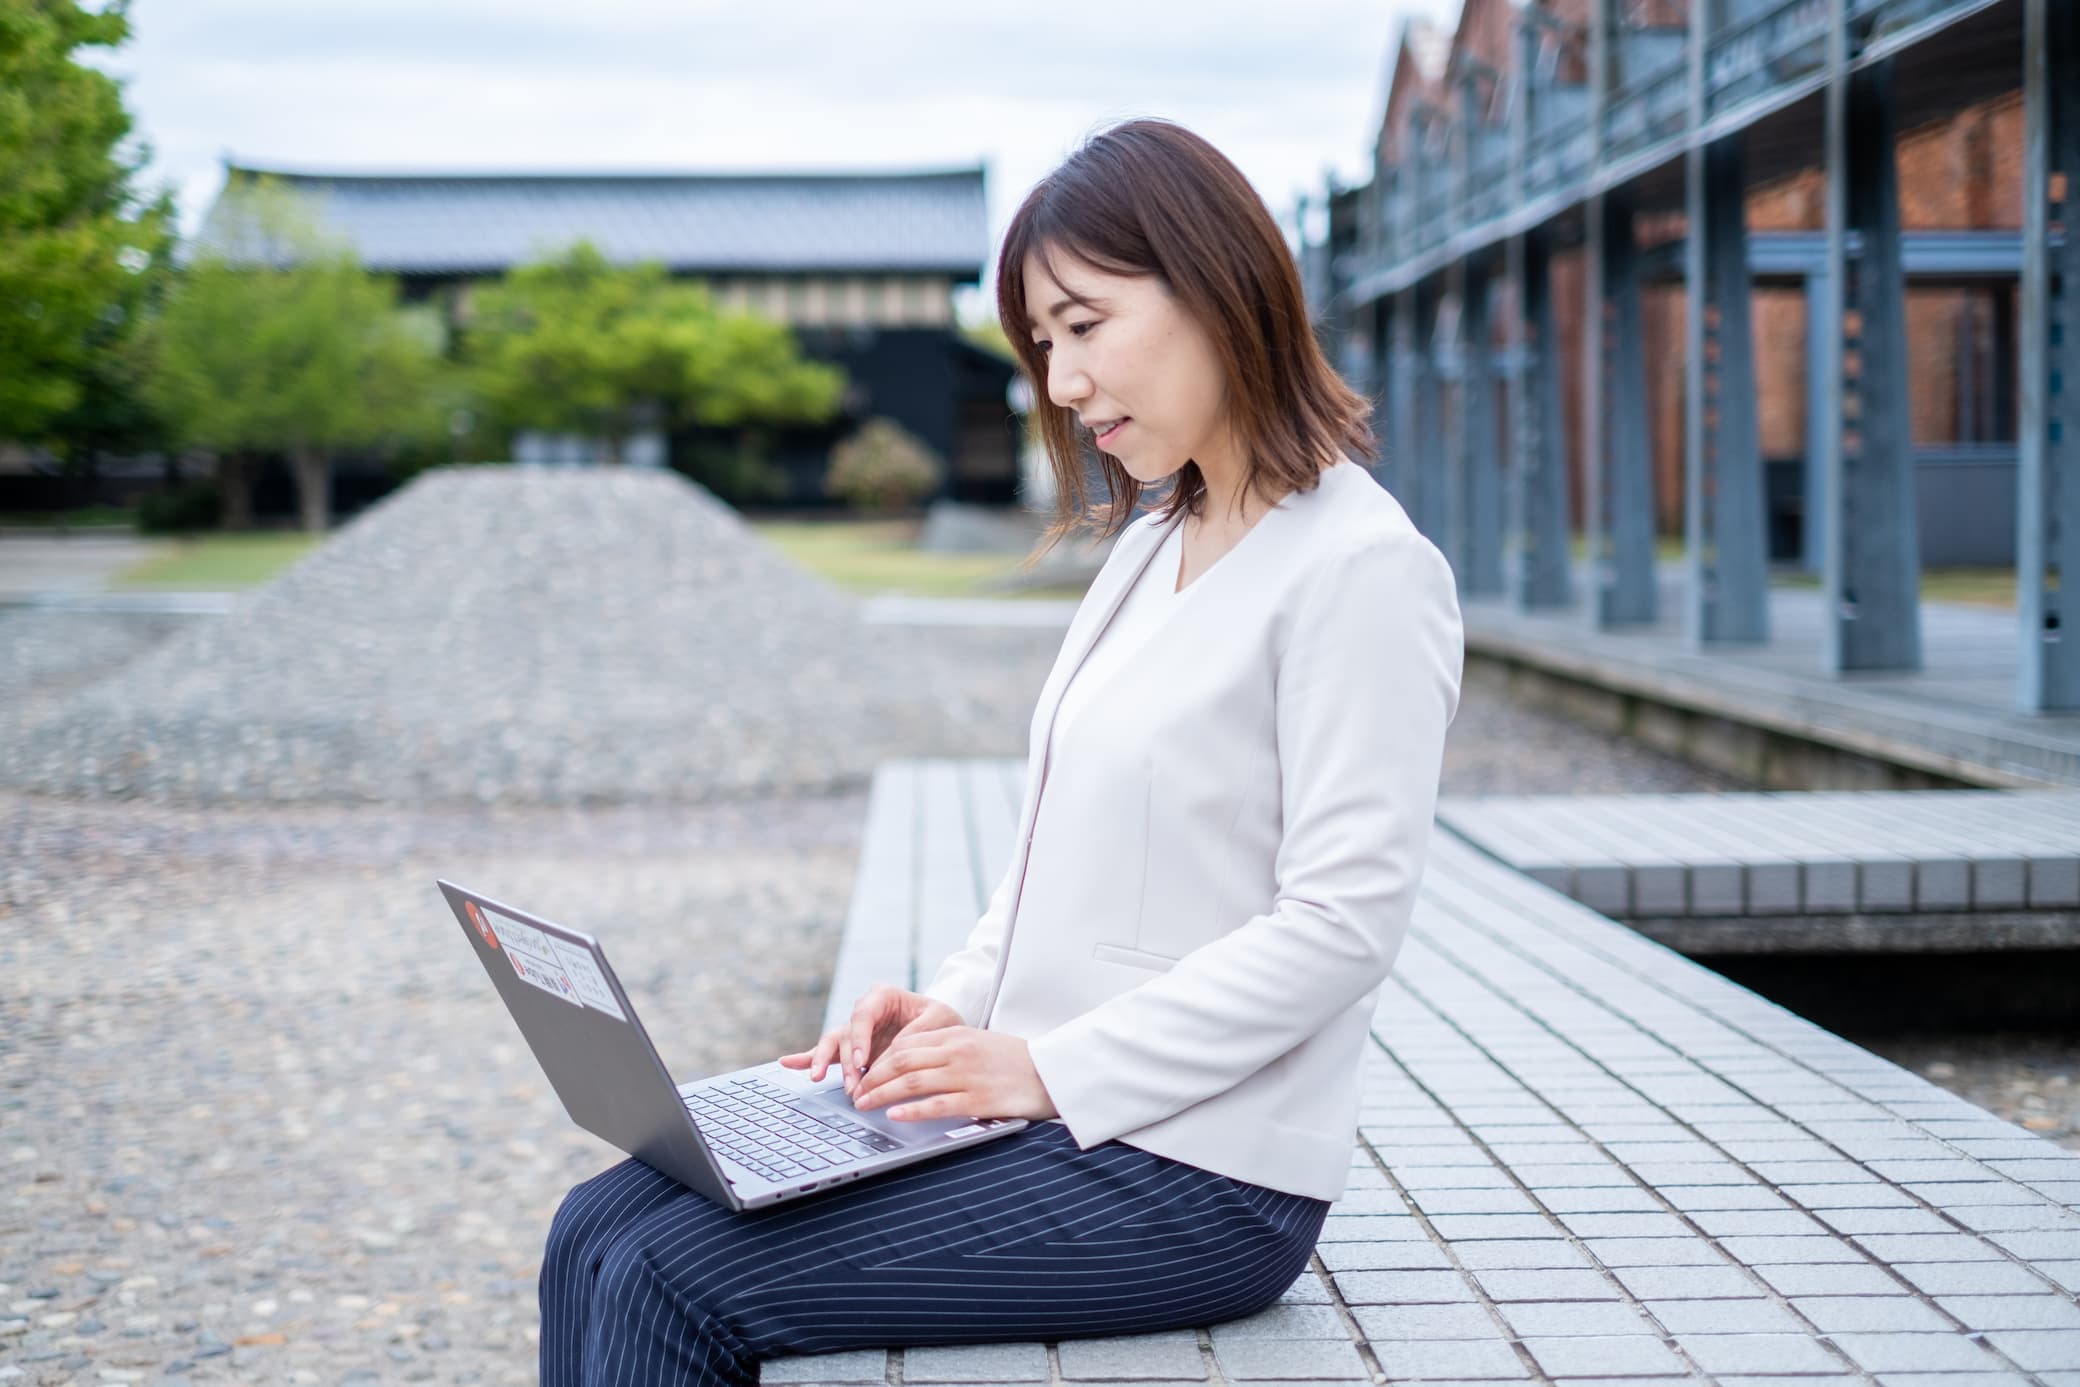 金沢の女性の求人情報（パート、アルバイト、契約社員、正社員）ならワタシゴト求人。インターネット業界、web業界、web制作